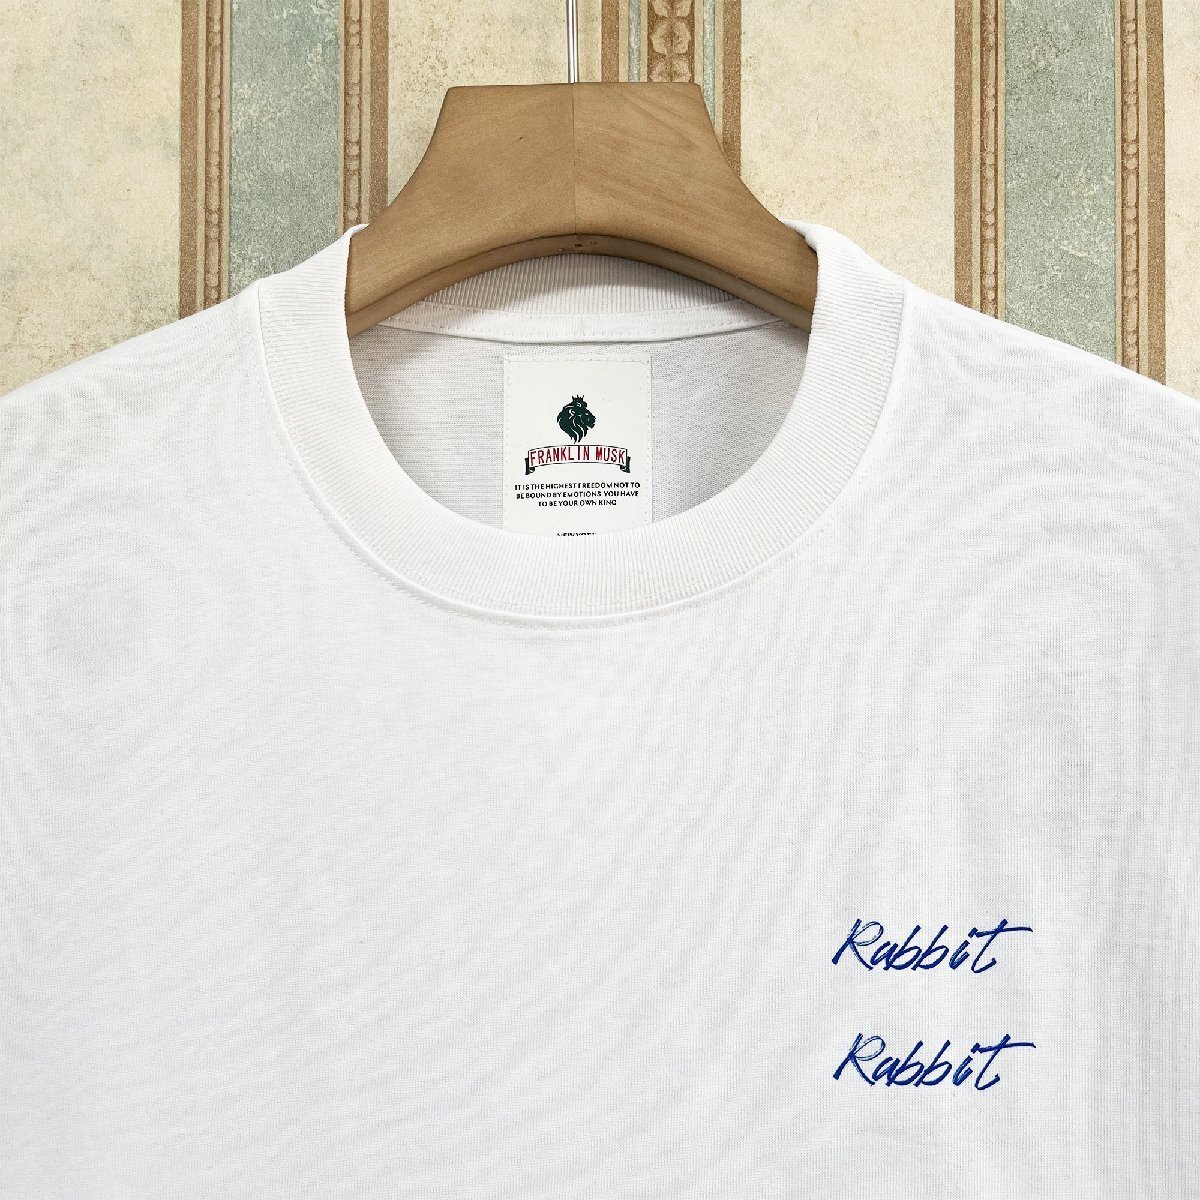 逸品 定価2万 FRANKLIN MUSK・アメリカ・ニューヨーク発 半袖Tシャツ 上質 薄手 吸湿 ウサギ カットソー スタイリッシュ 日常 サイズ2_画像3